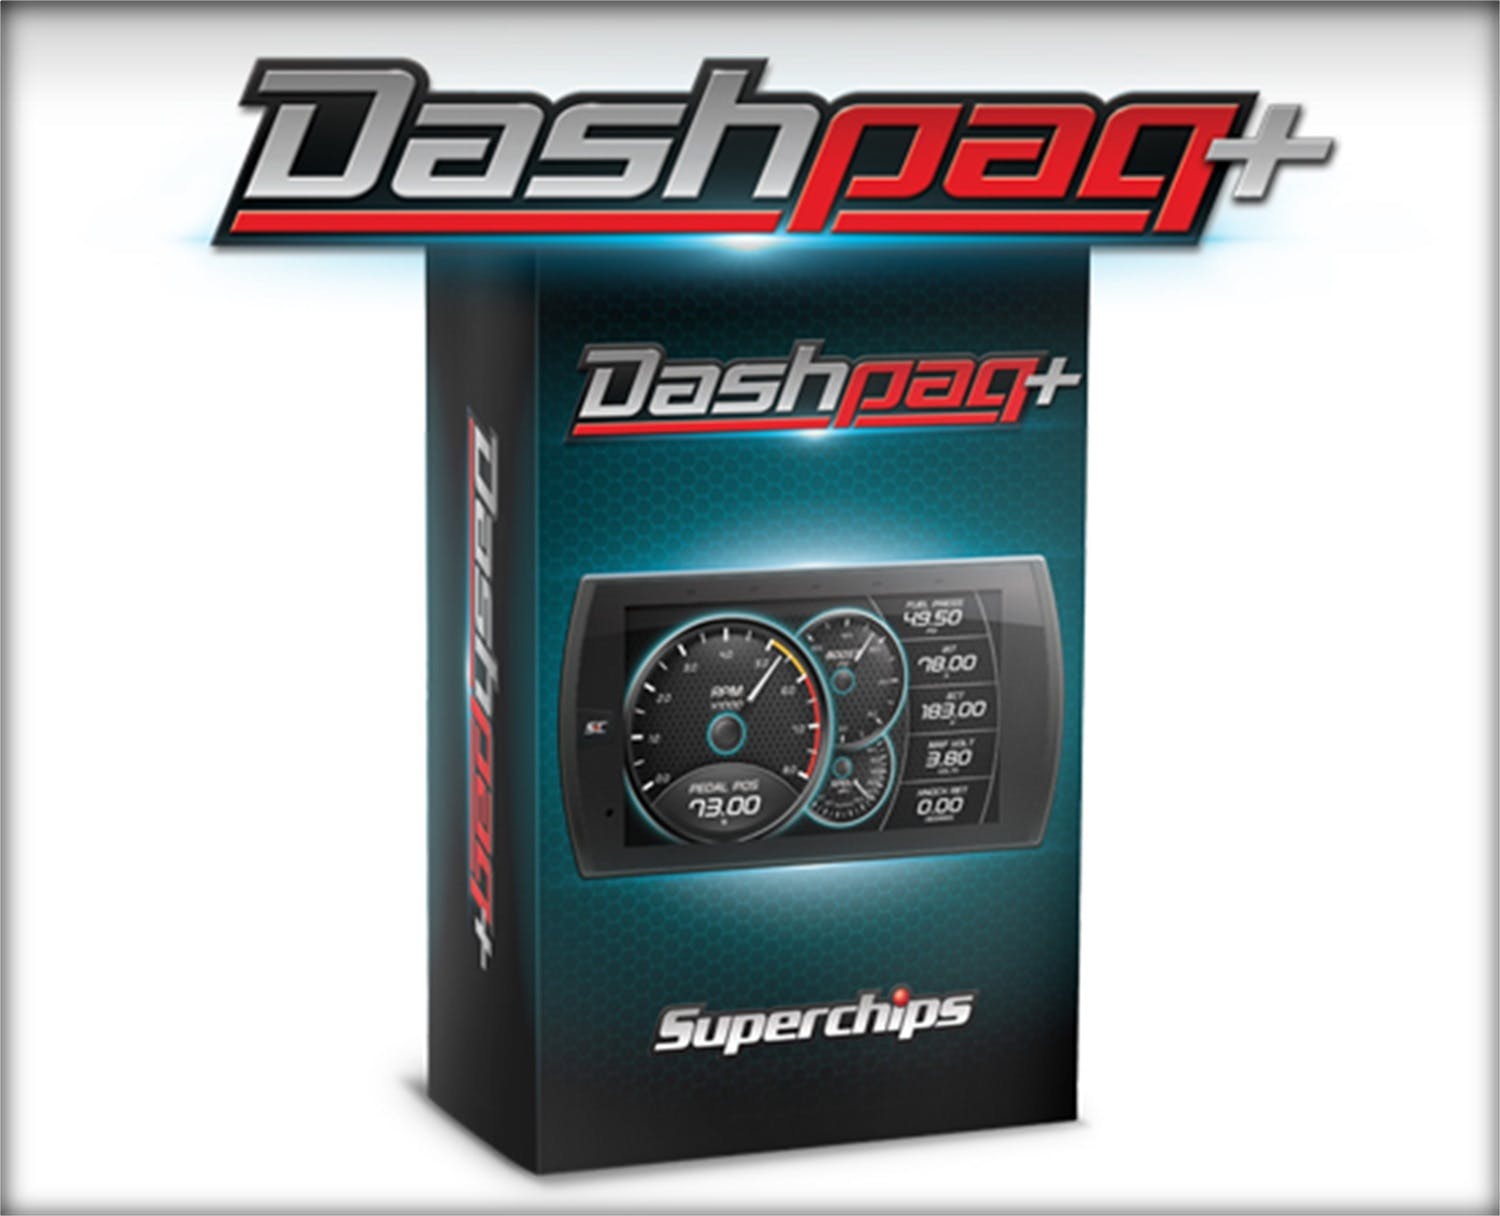 Superchips 10601 Dashpaq + Ford Gas Vehicles